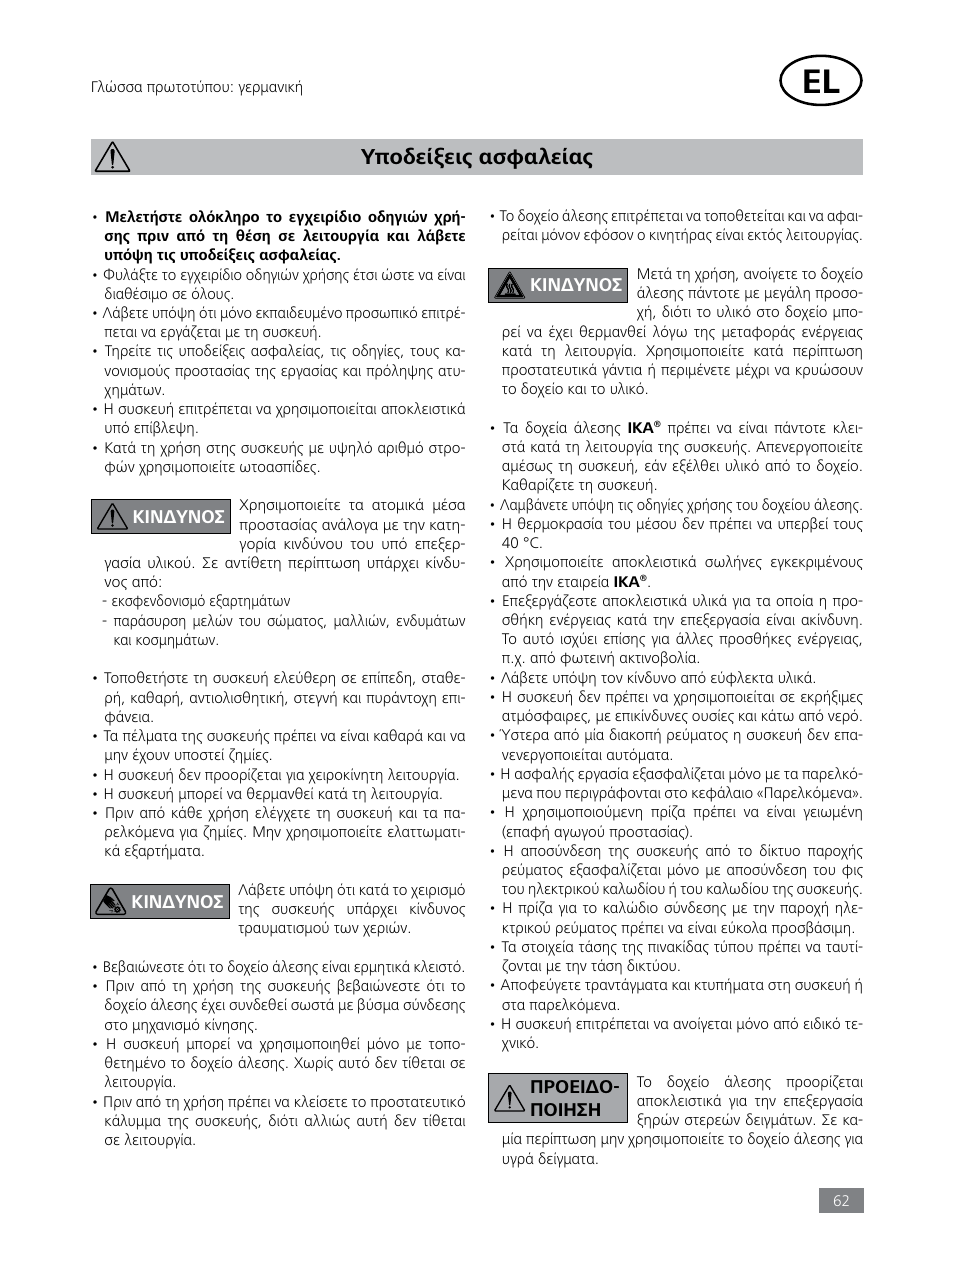 Υποδείξεις ασφαλείας | IKA Tube Mill control User Manual | Page 62 / 64